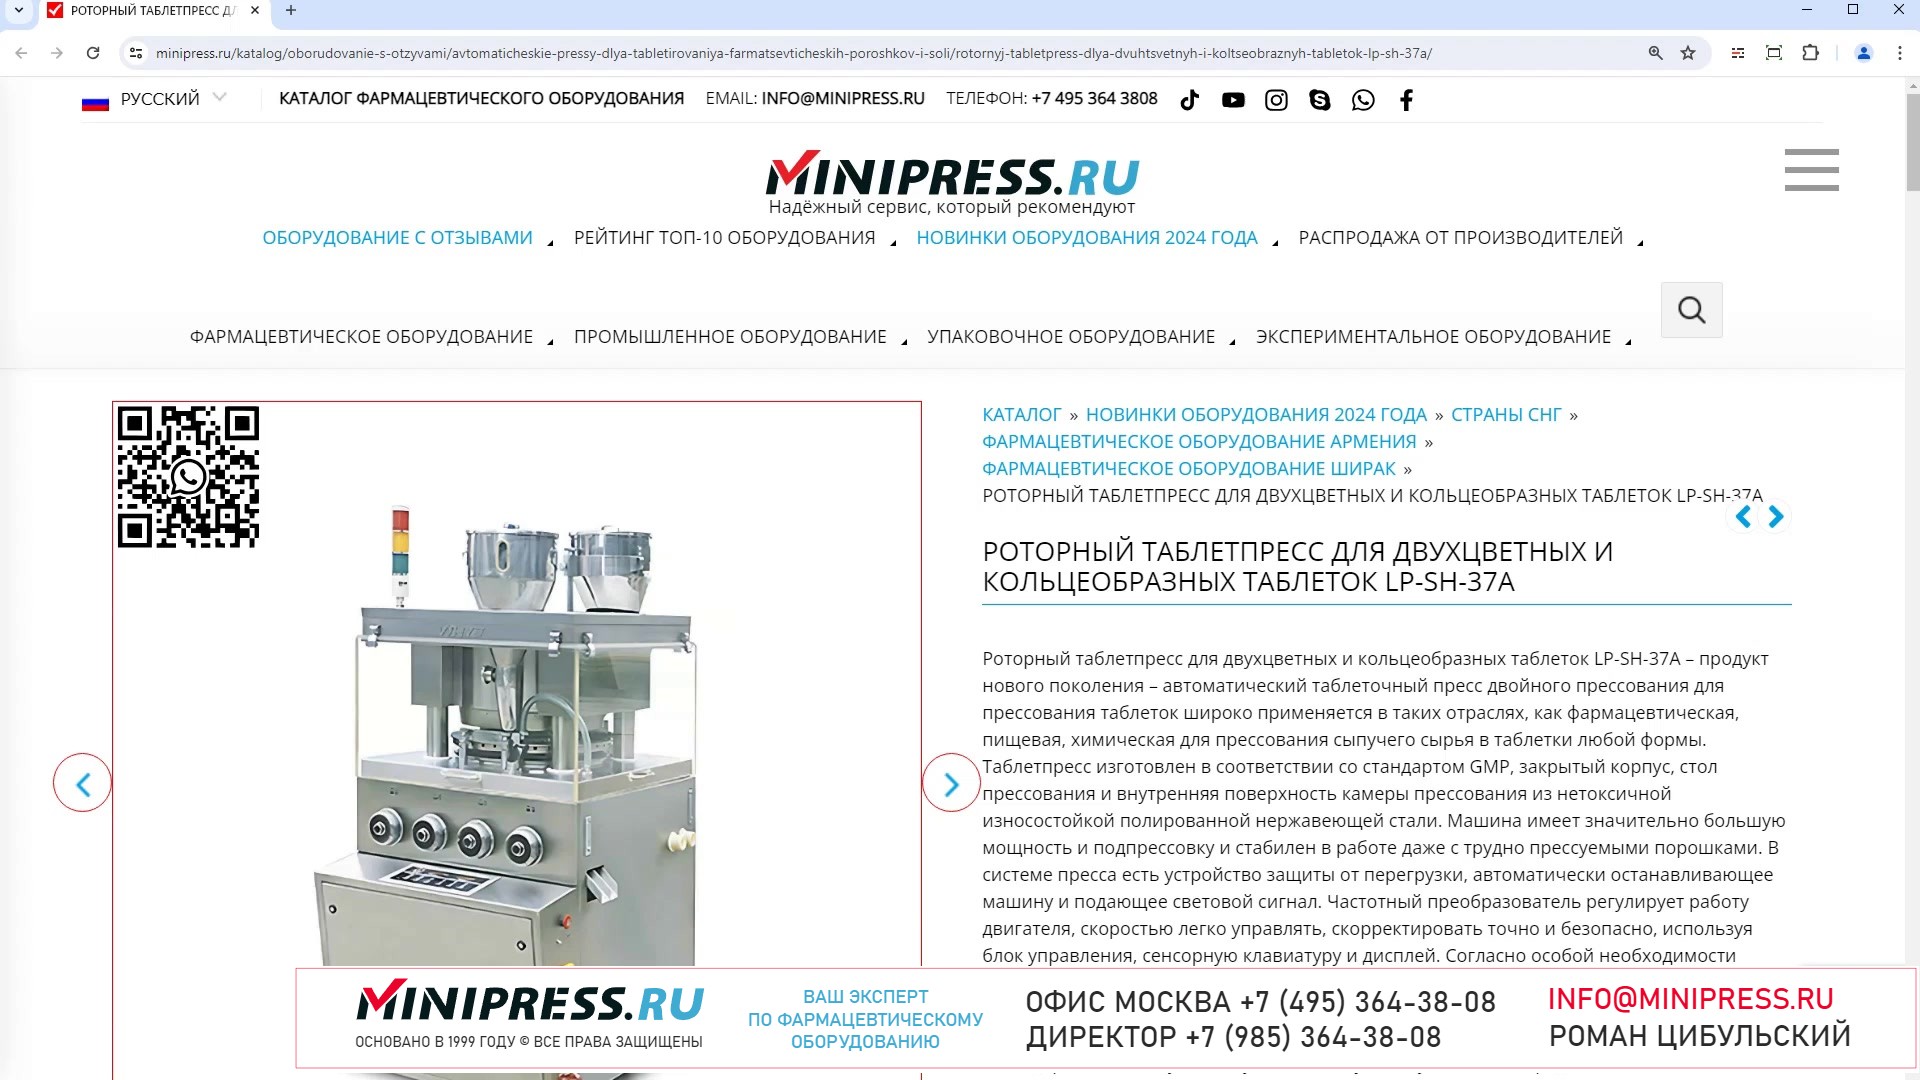 Minipress.ru Роторный таблетпресс для двухцветных и кольцеобразных таблеток LP-SH-37A